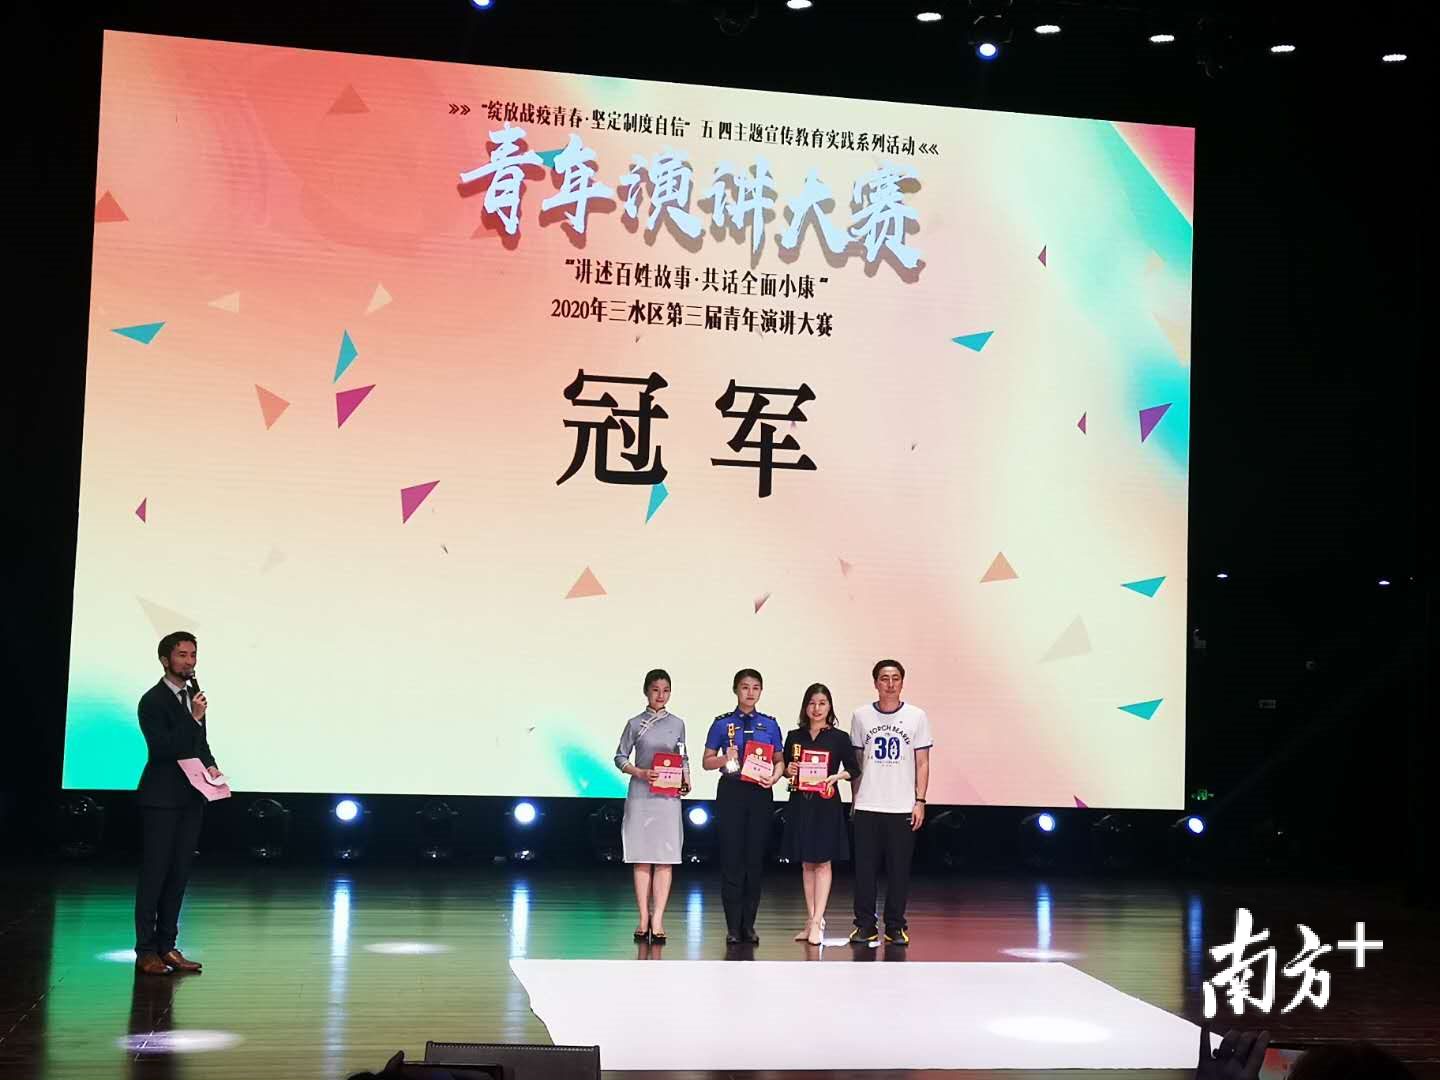 经过激烈的角逐，周芷华、陈安琪、郑燕妮分别获得本次大赛的冠、亚、季军。